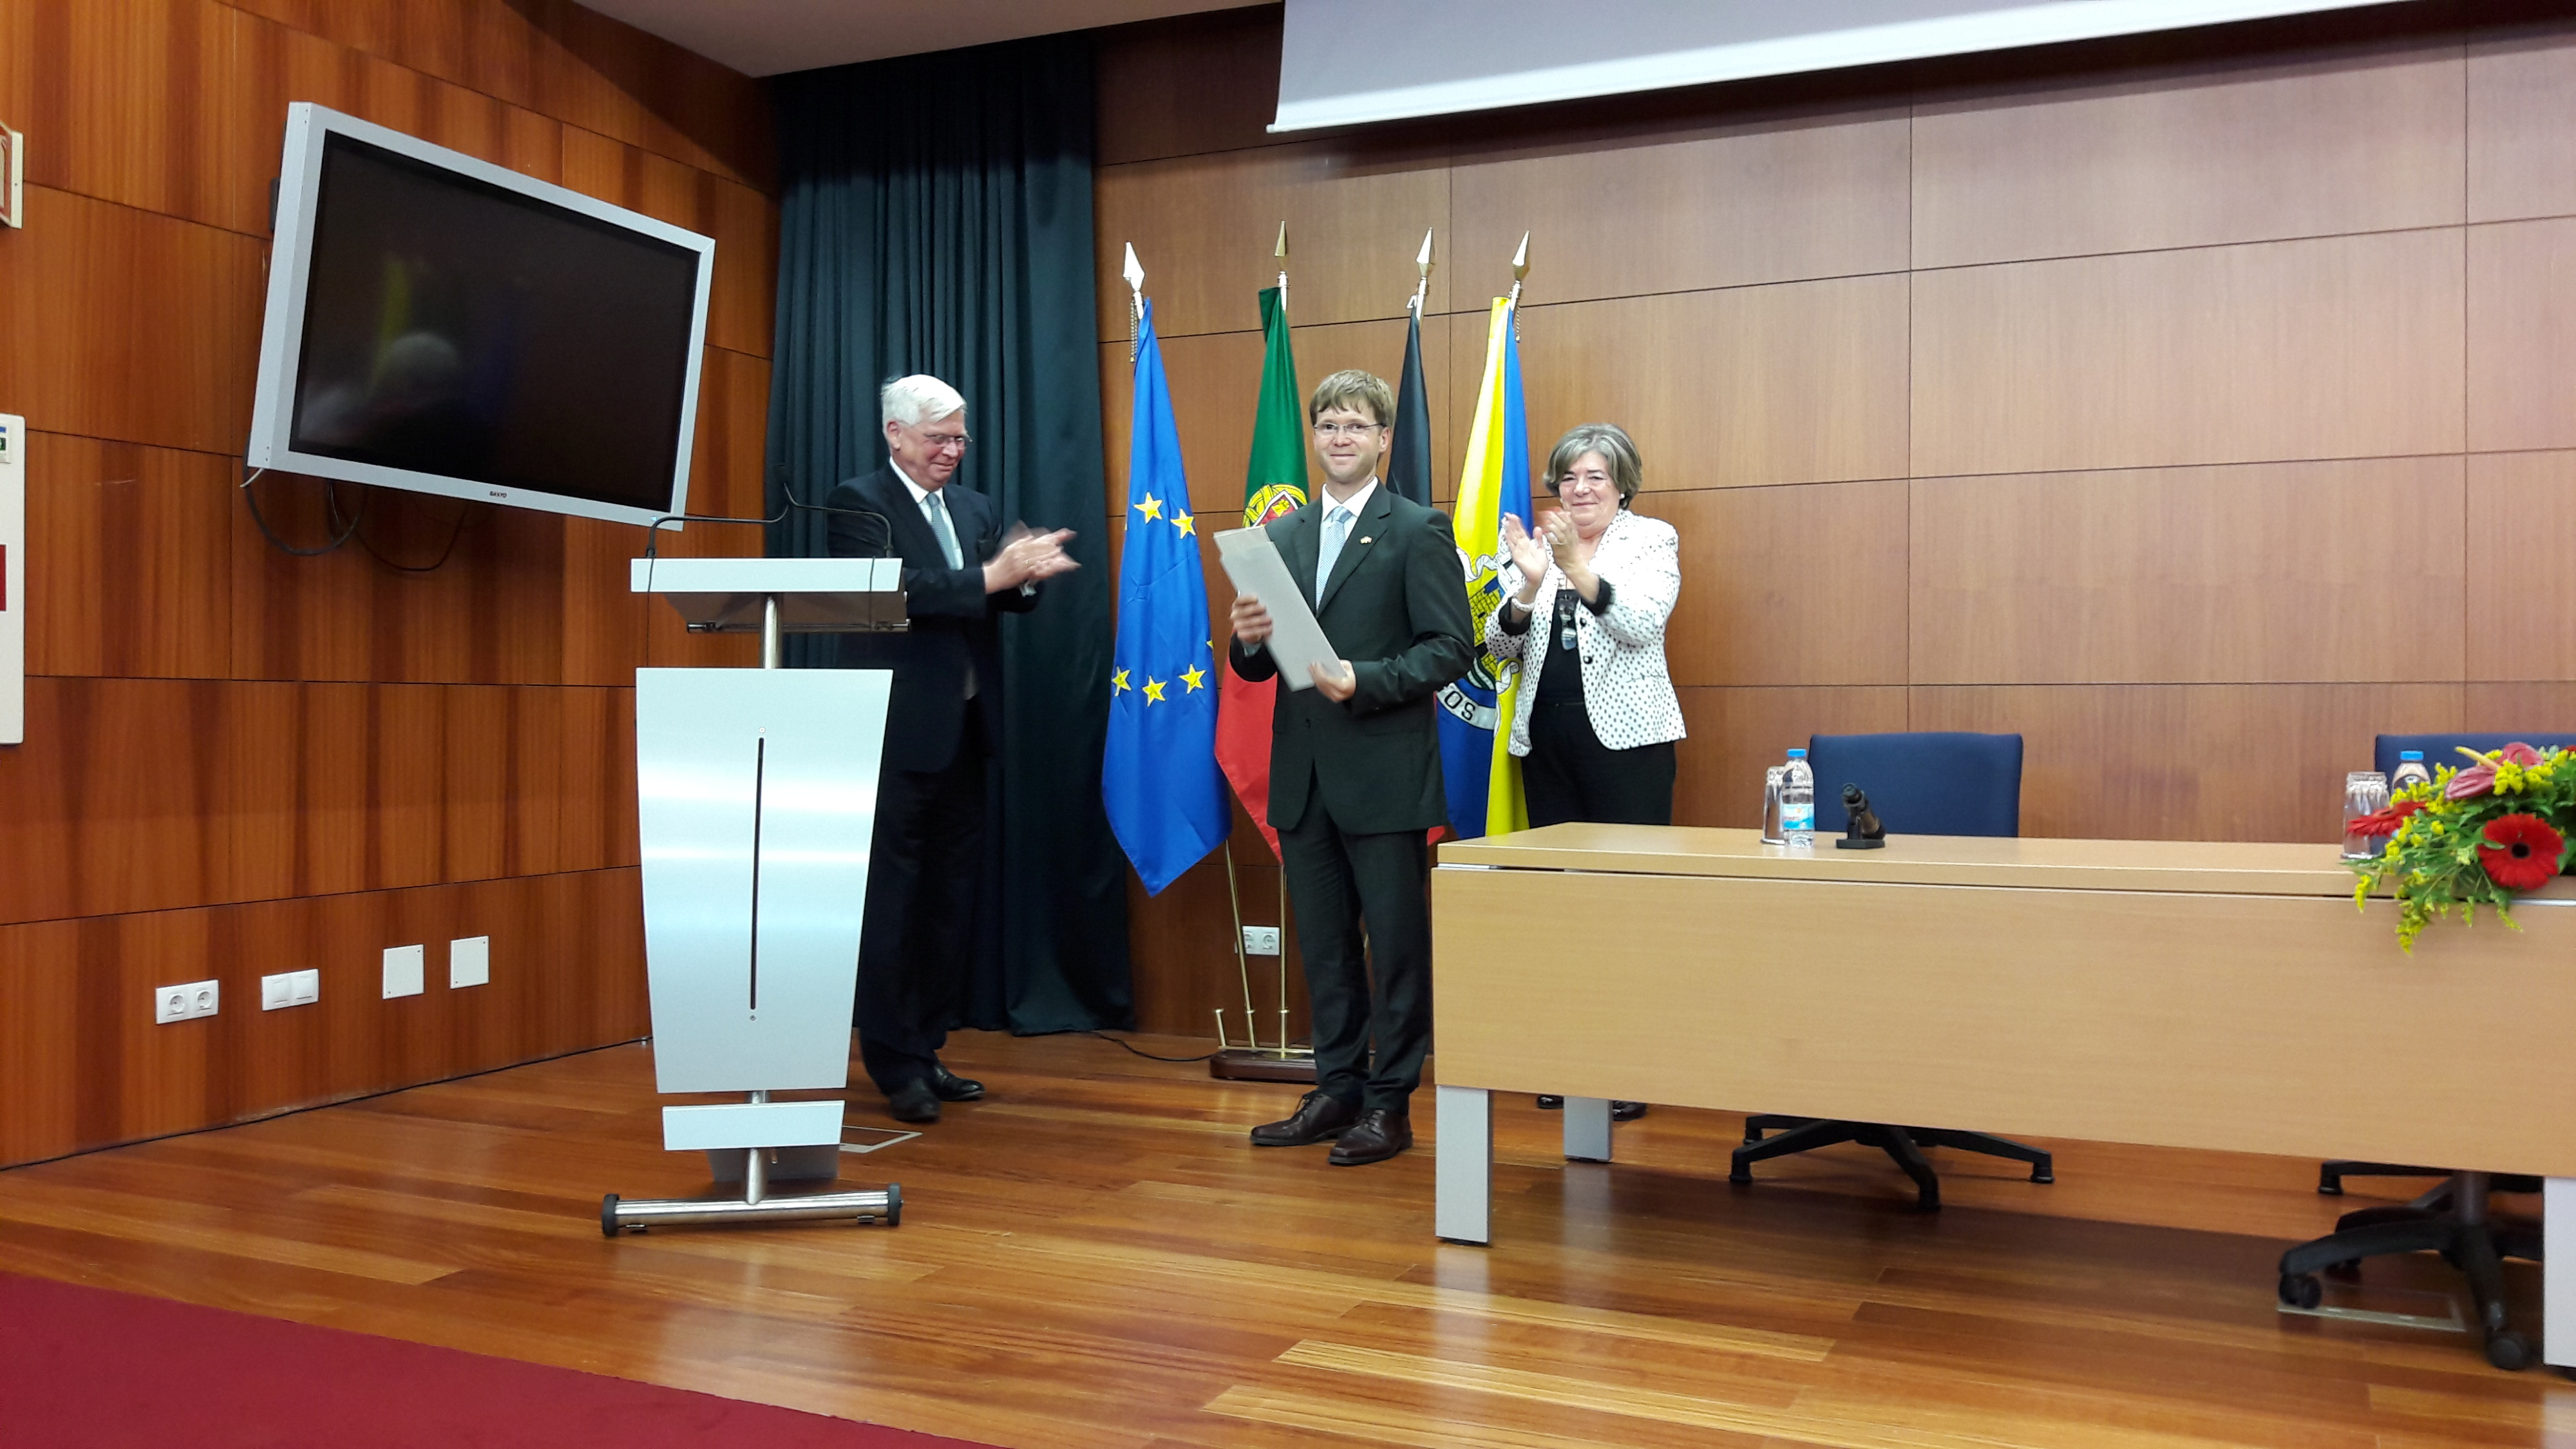 Herr Dr. Alexander Rathenau ist der neue Honorarkonsul in der Algarve